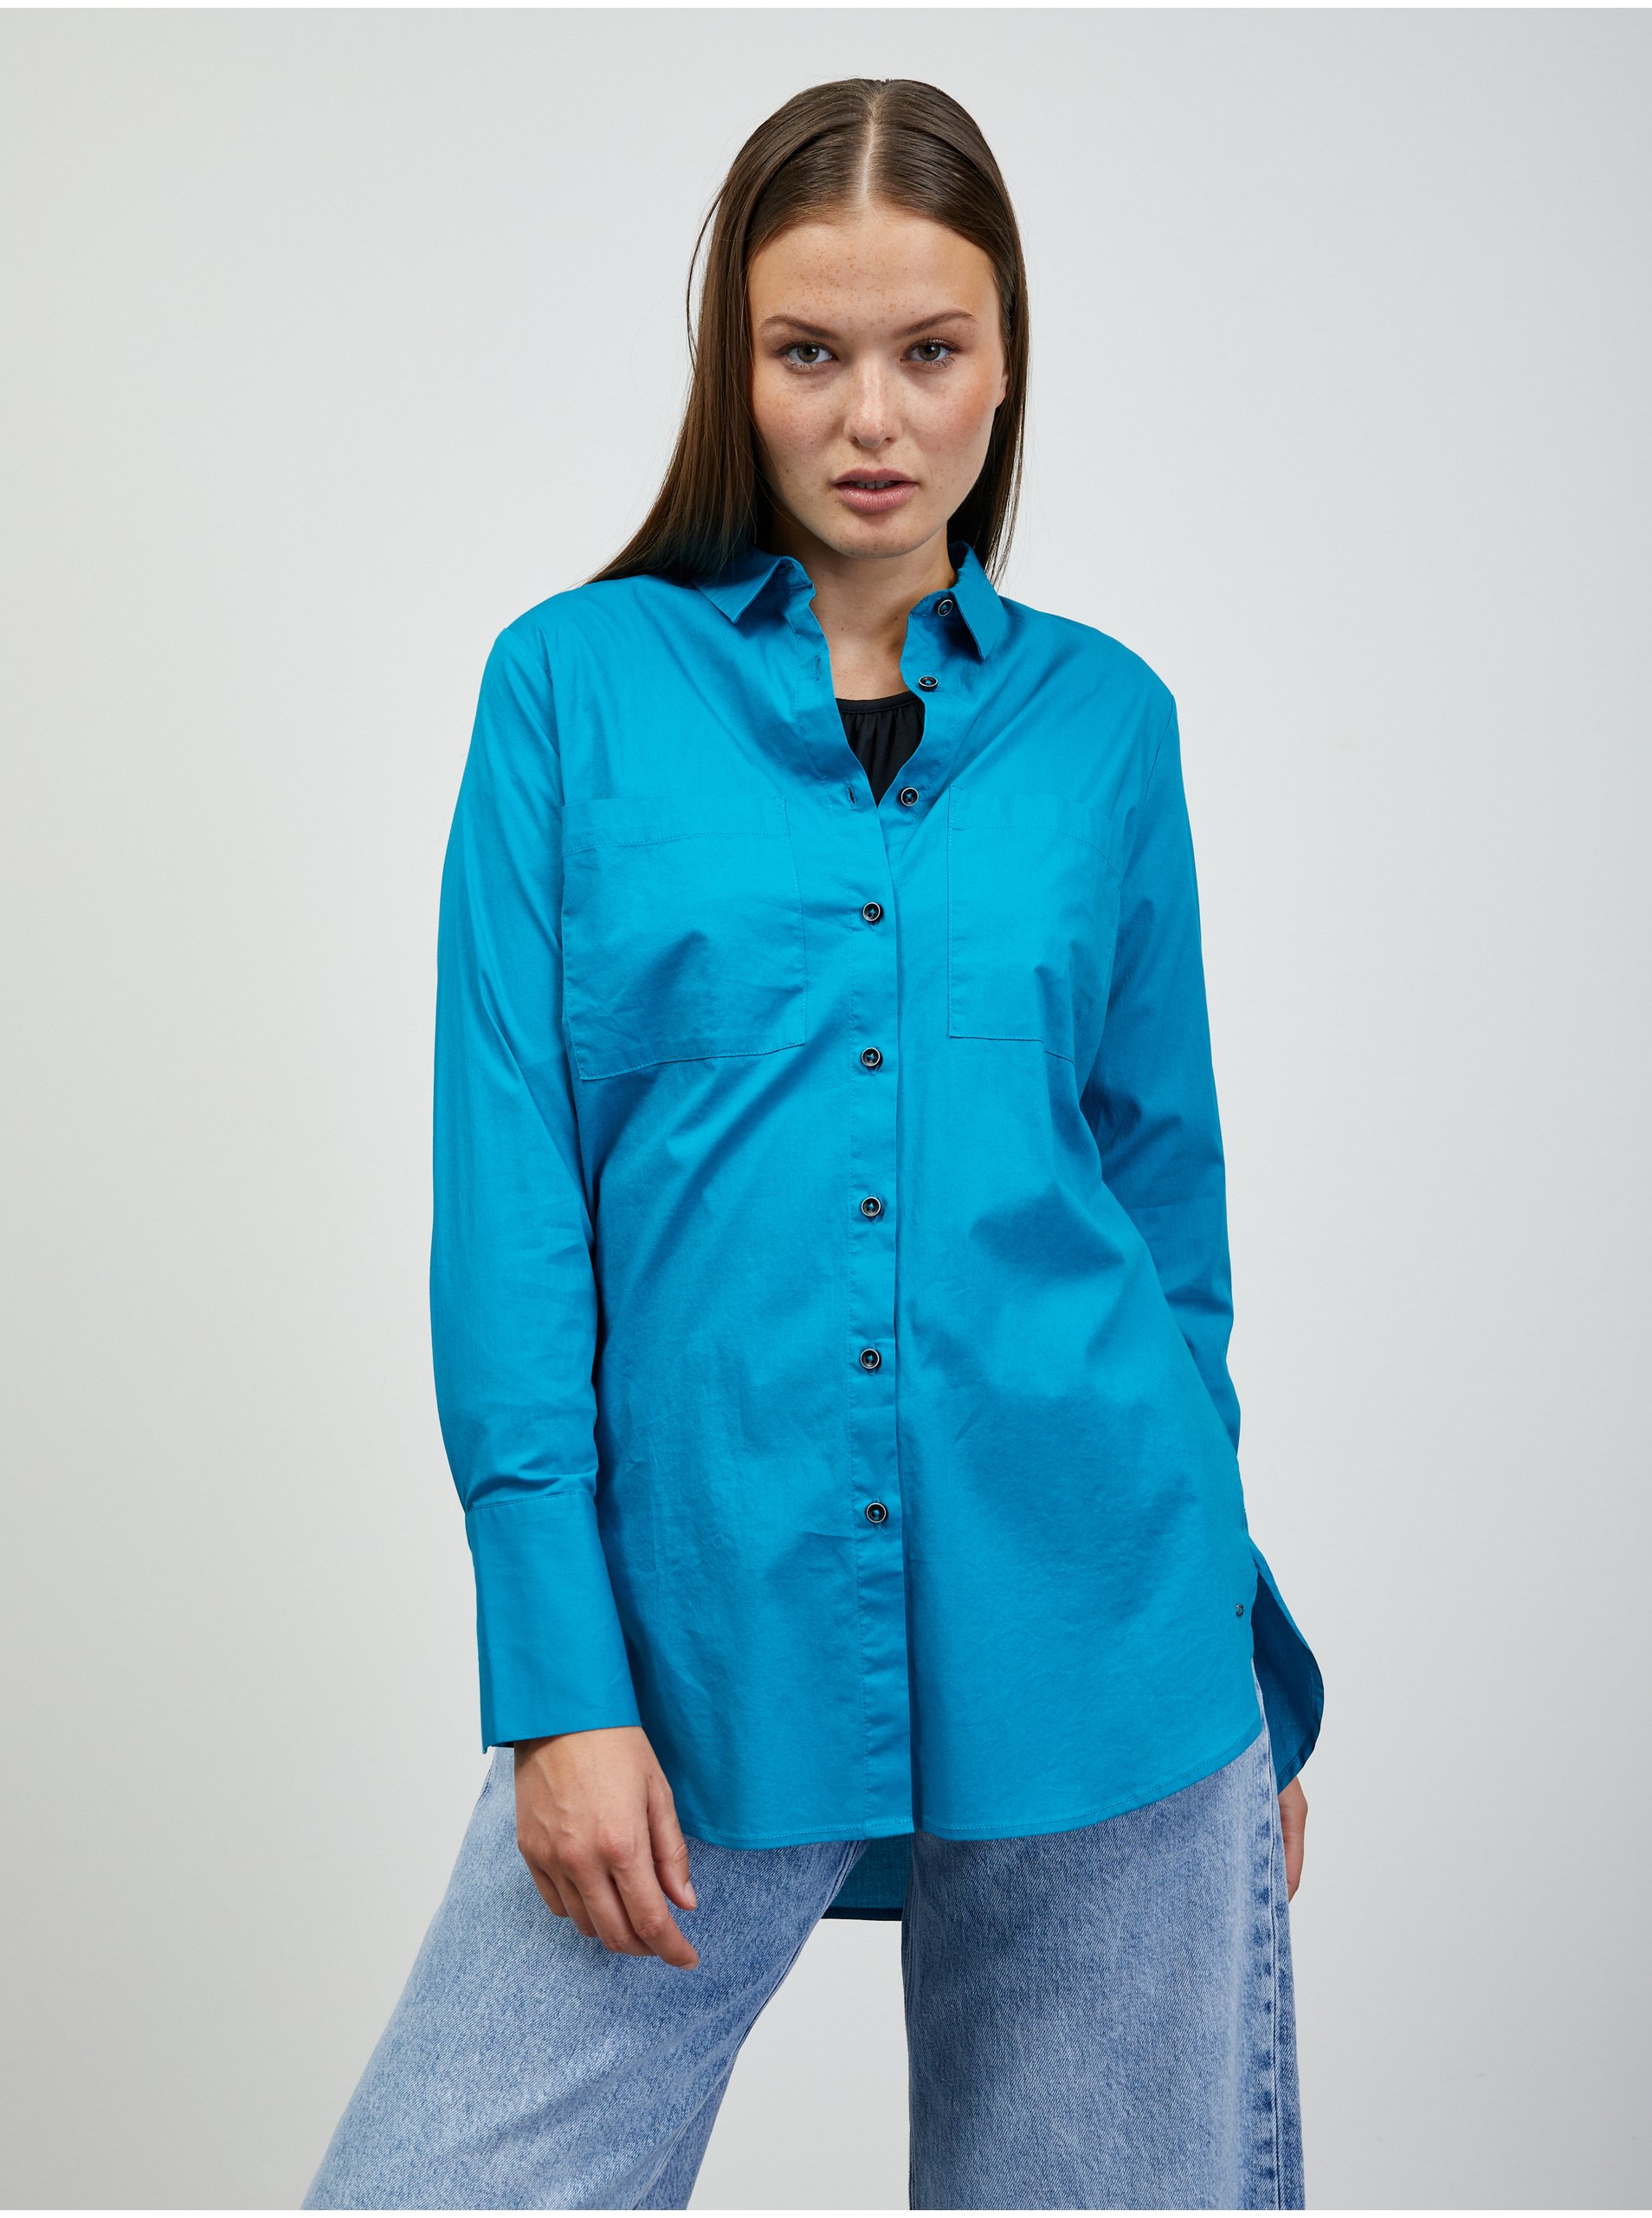 E-shop Modrá dámská košile ZOOT.lab Chelsea